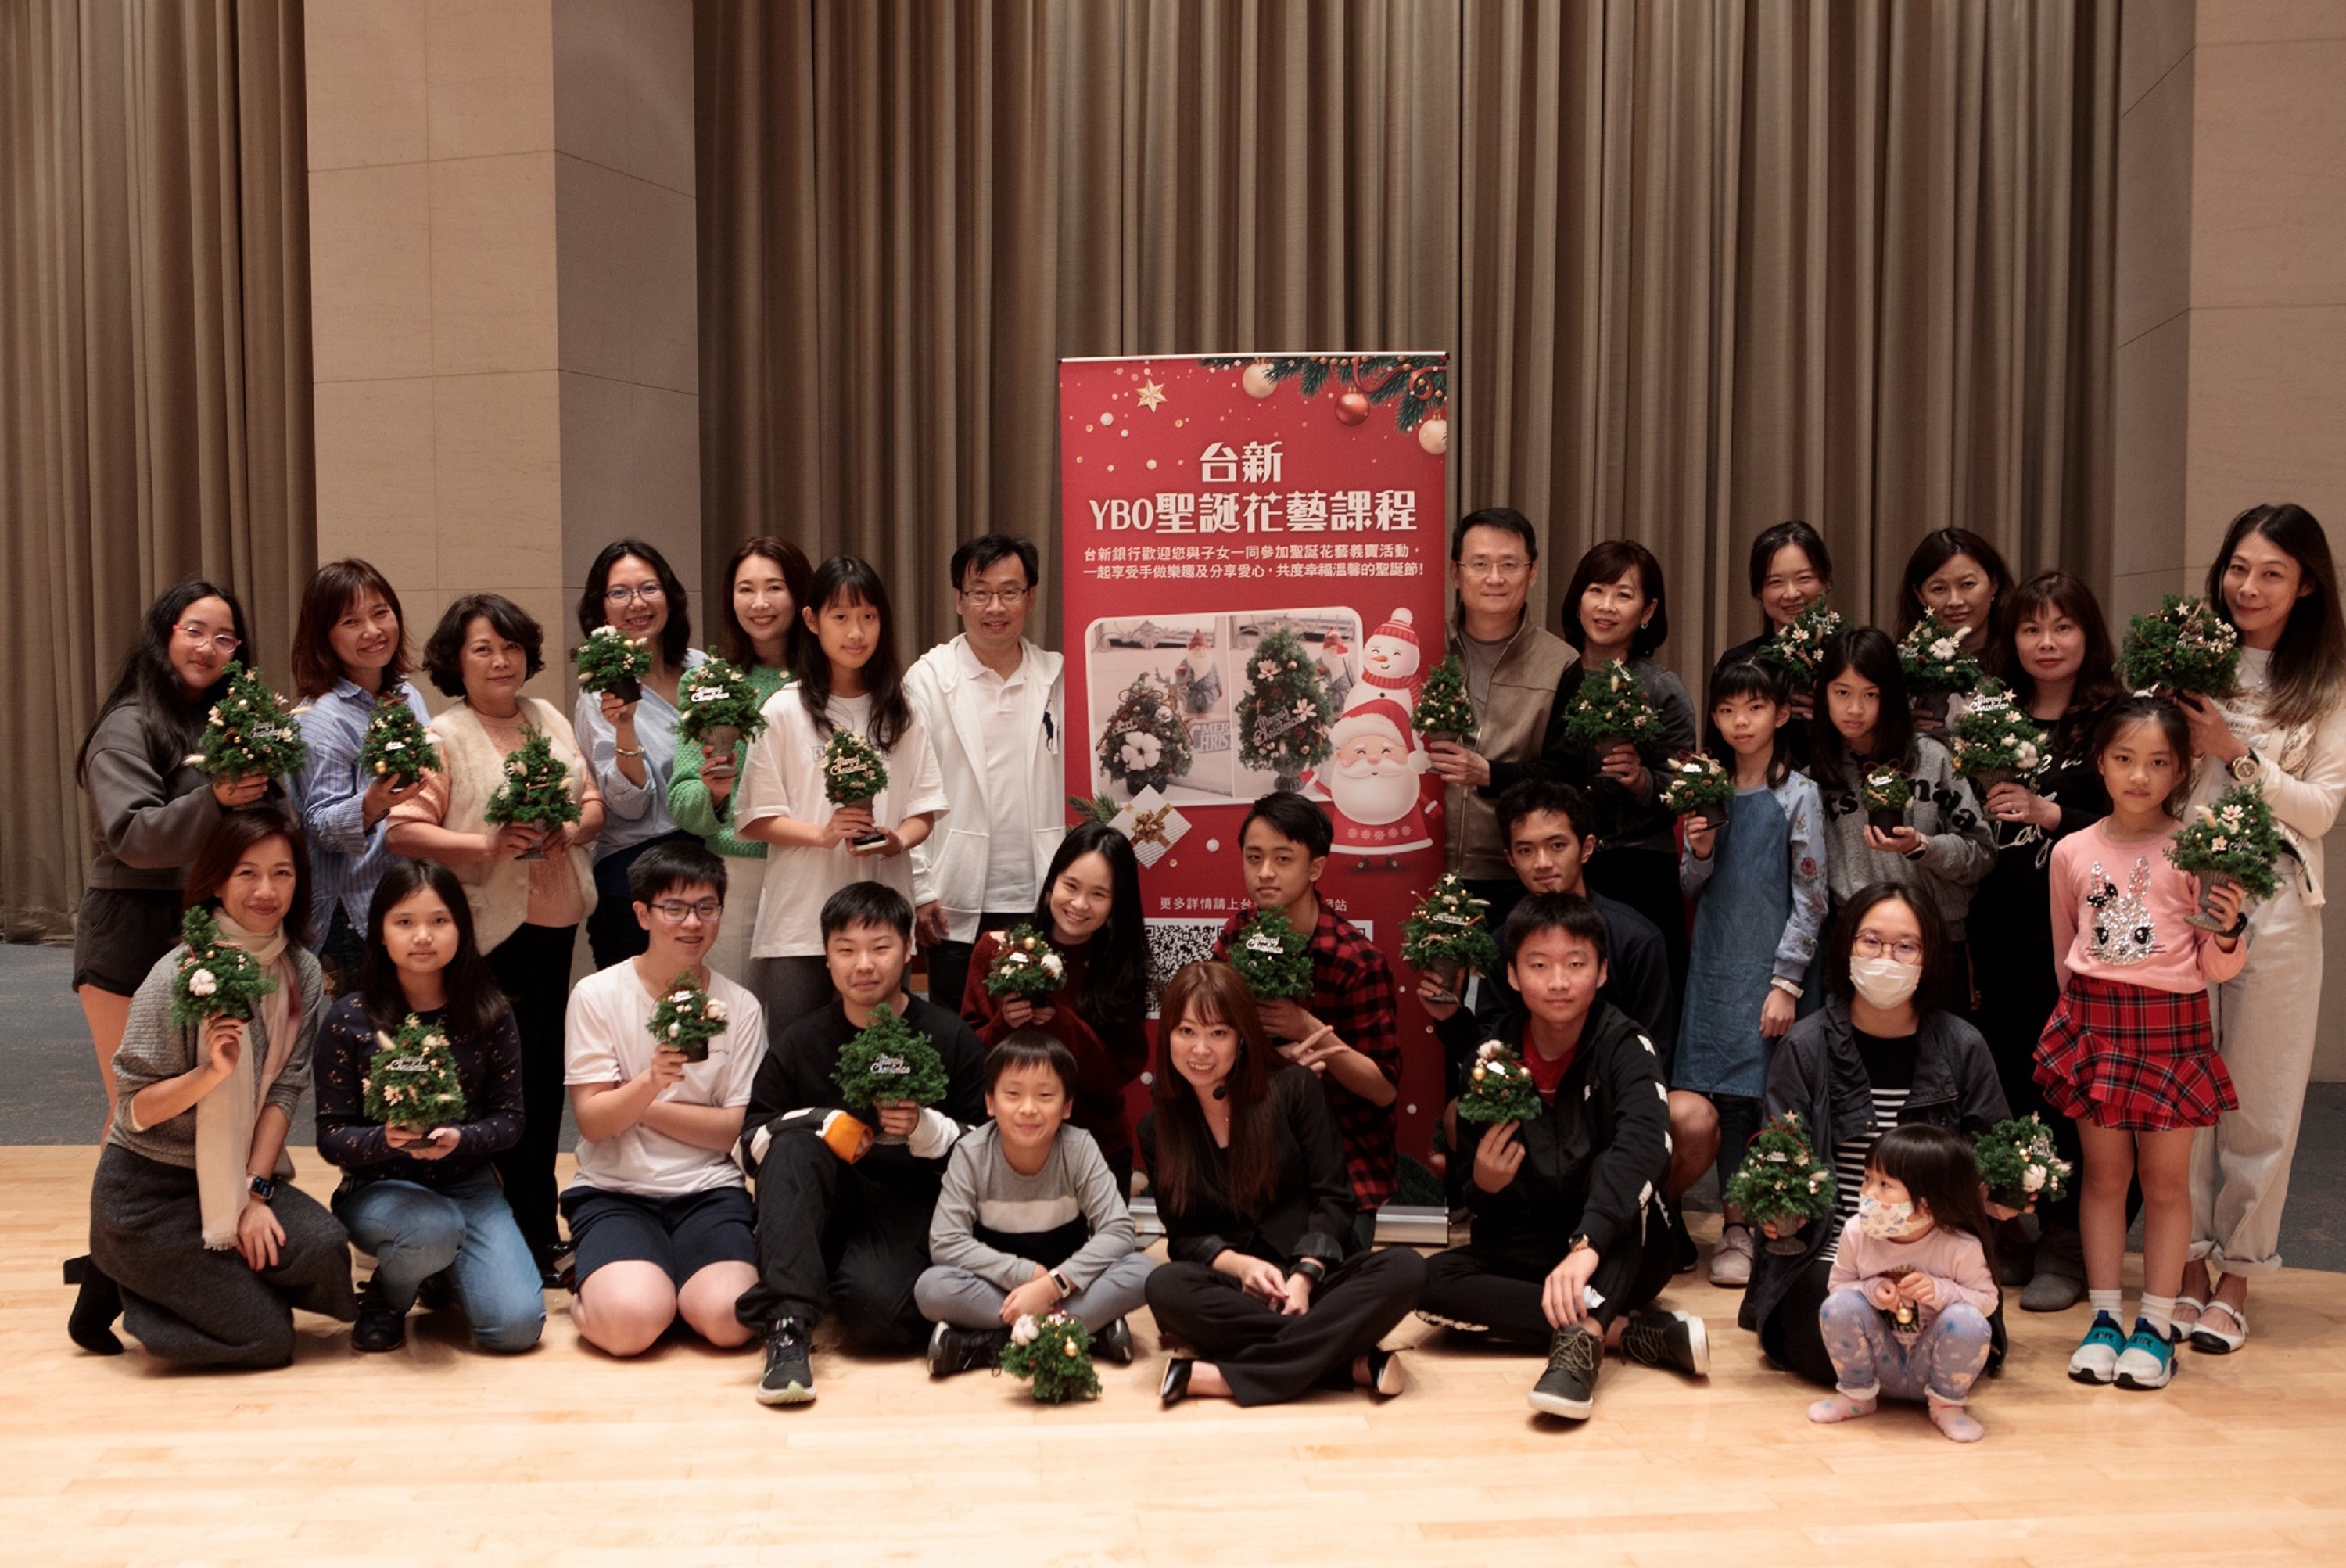 20201225_台新YBO兒童會員聖誕送暖 邀請親子參與手工花藝做公益_新聞圖片